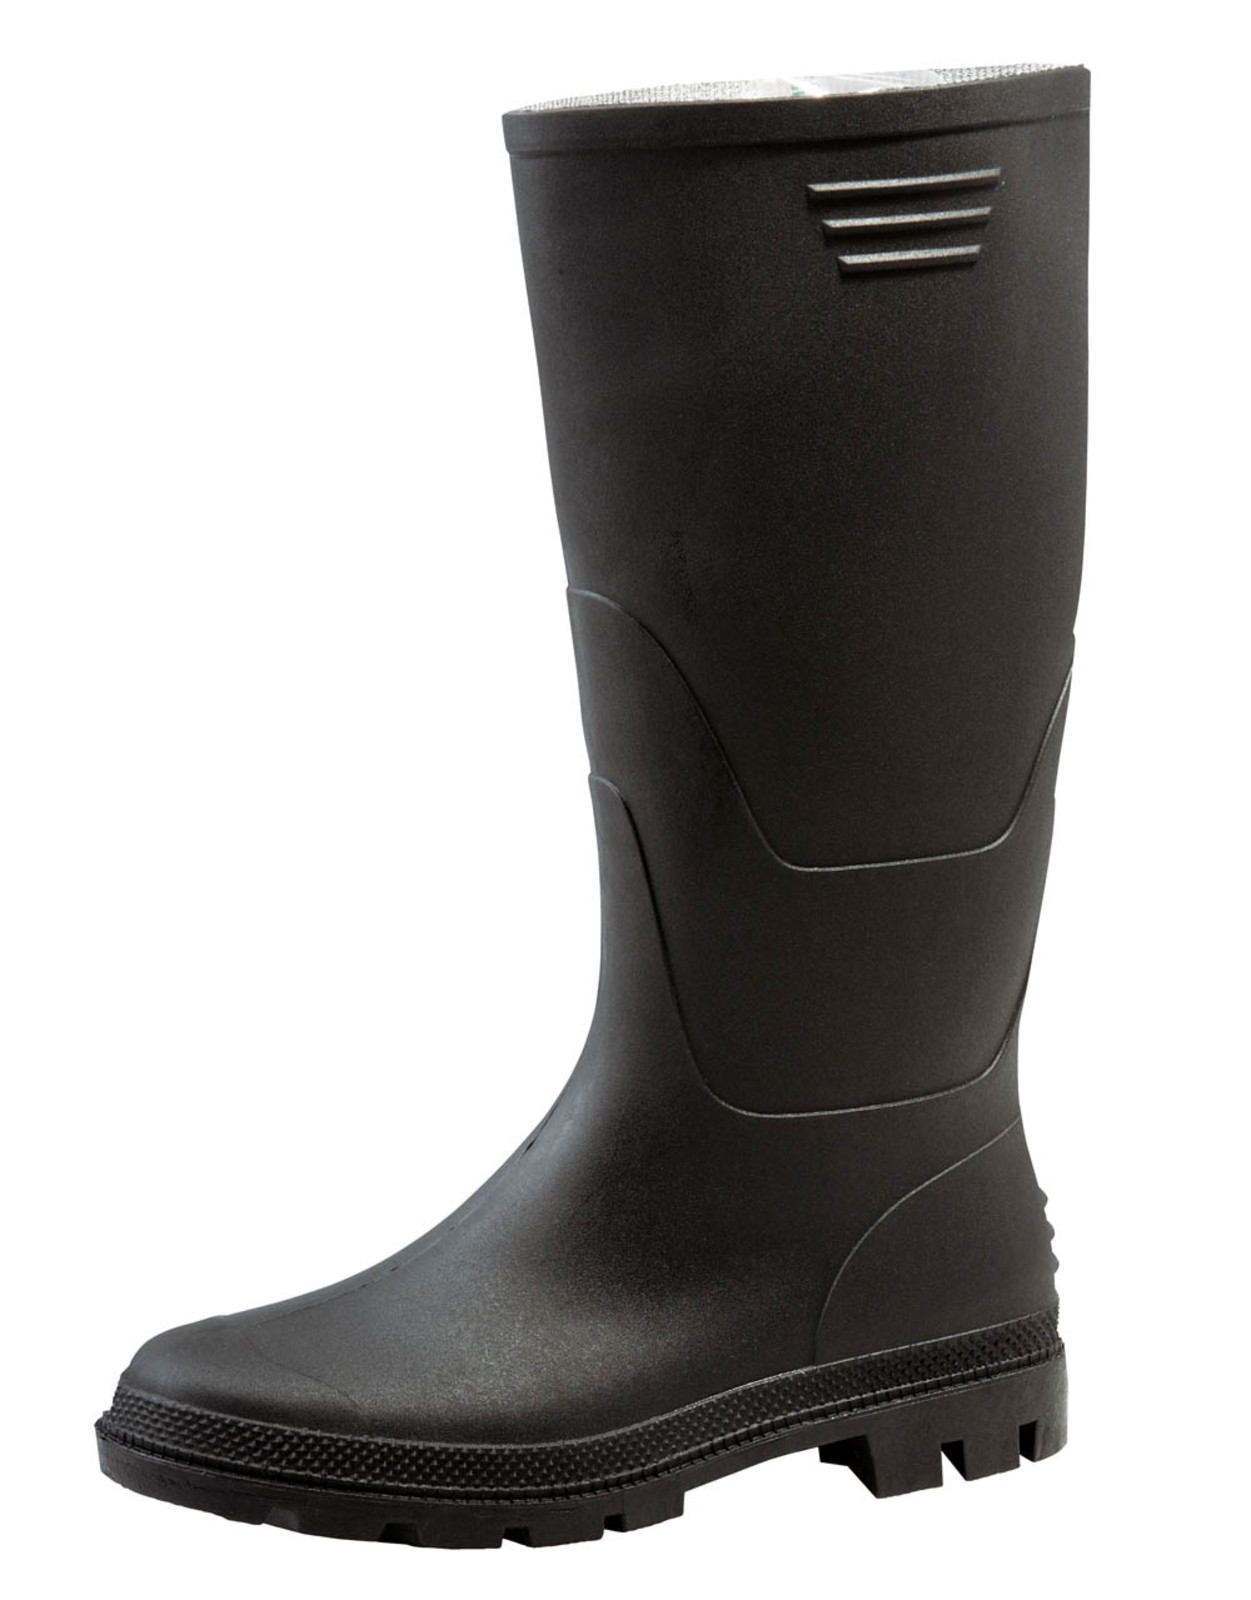 Gumáky Boots Ginocchio PVC - veľkosť: 41, farba: čierna